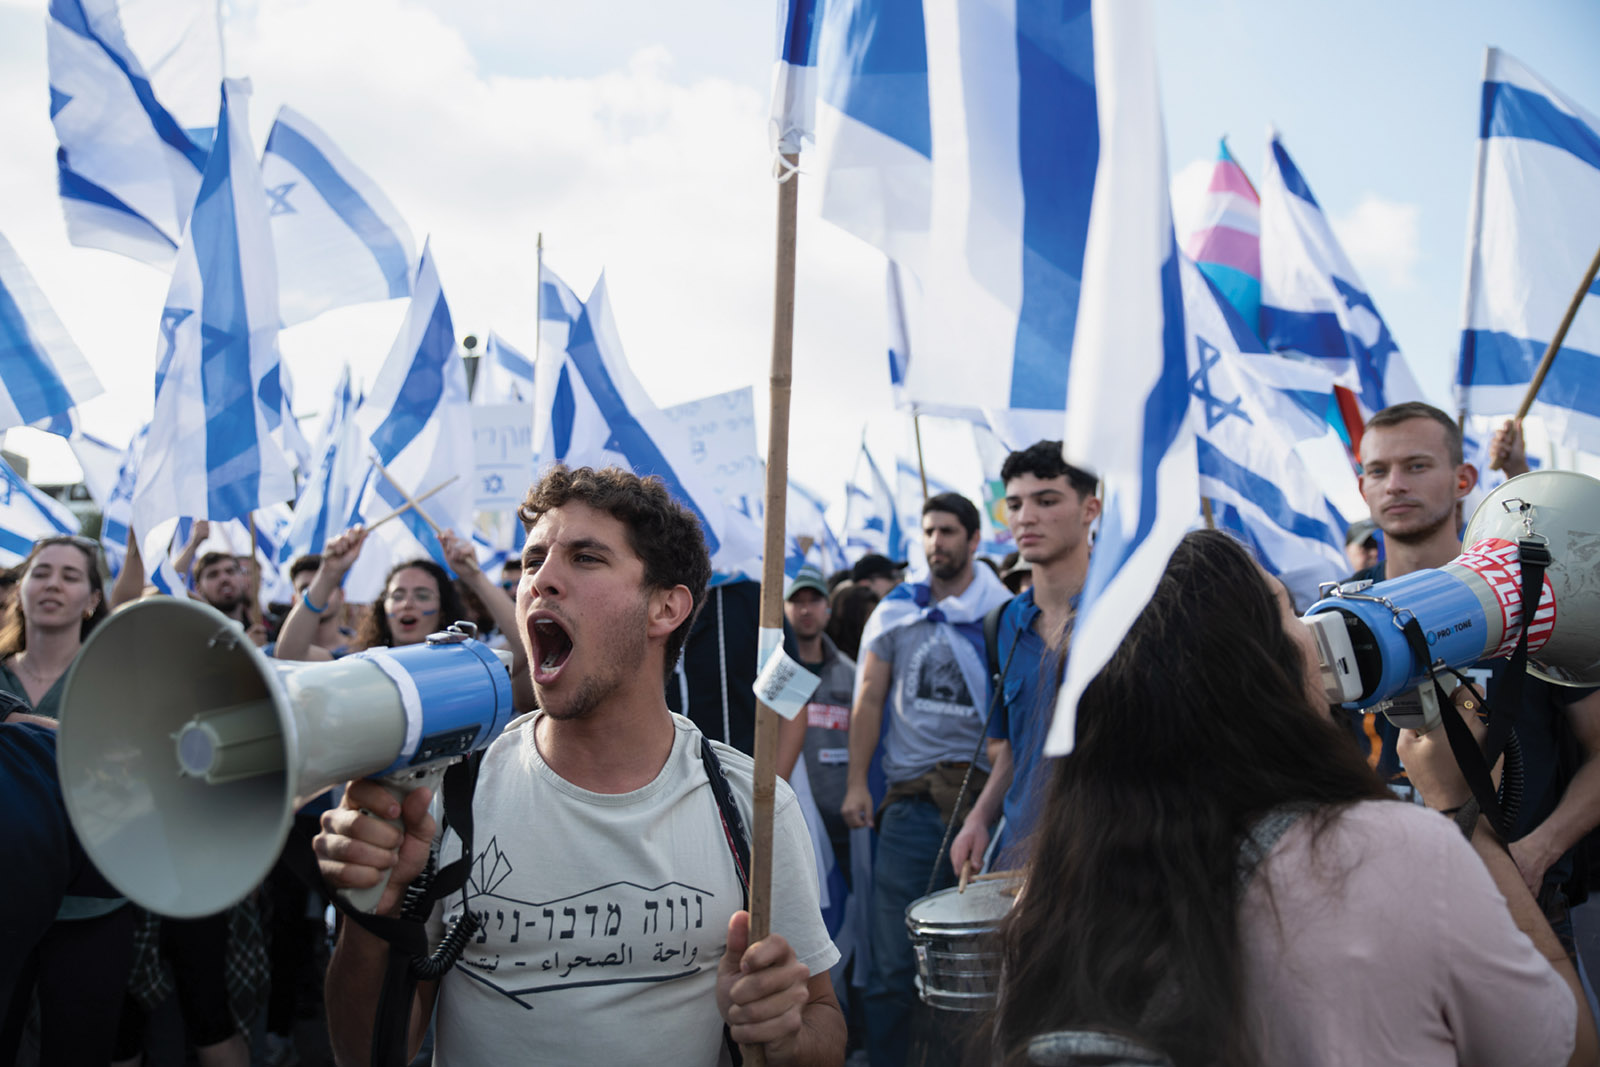 Protesters demonstrating against Israeli prime minister Benjamin Netanyahu’s judicial overhaul plan, Jerusalem